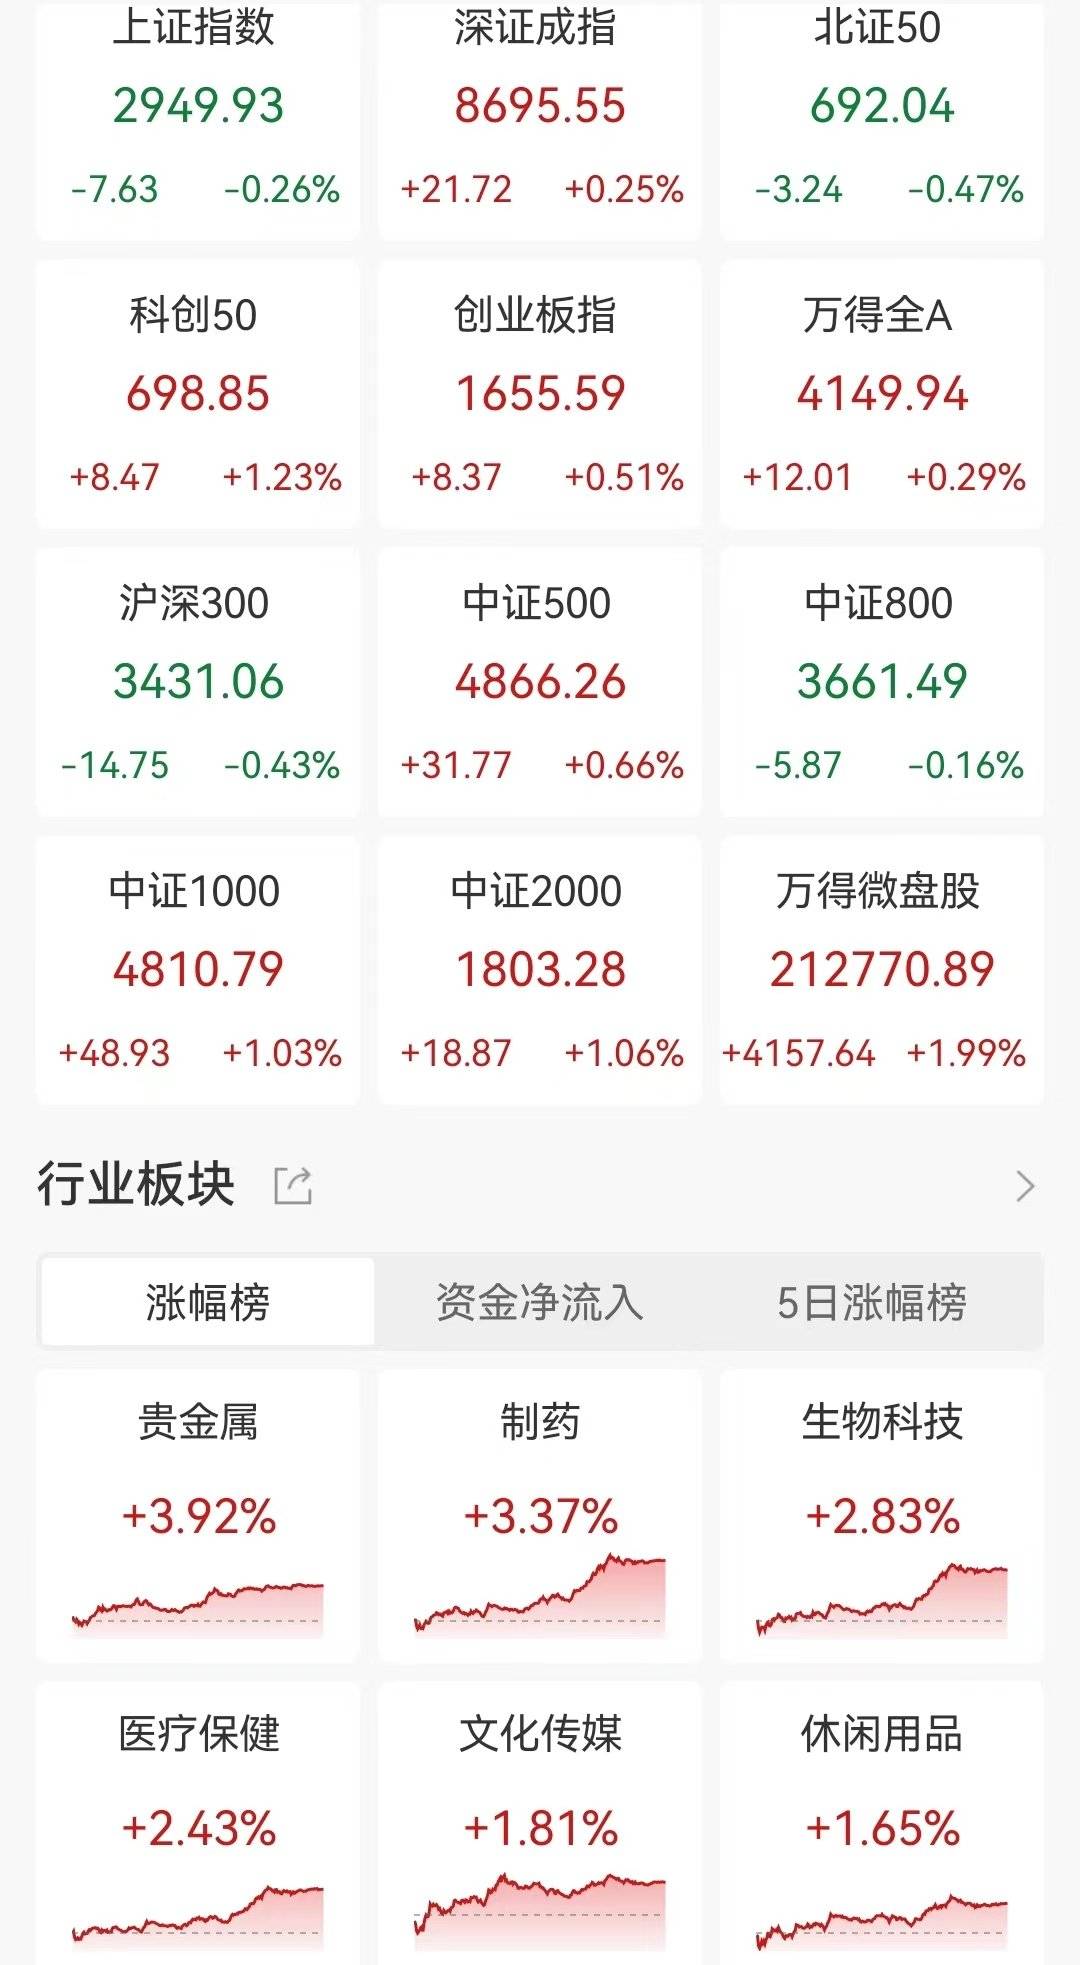 连续3日低于6000亿 超3900股上涨 成交5749亿 沪指V字走势跌0.26